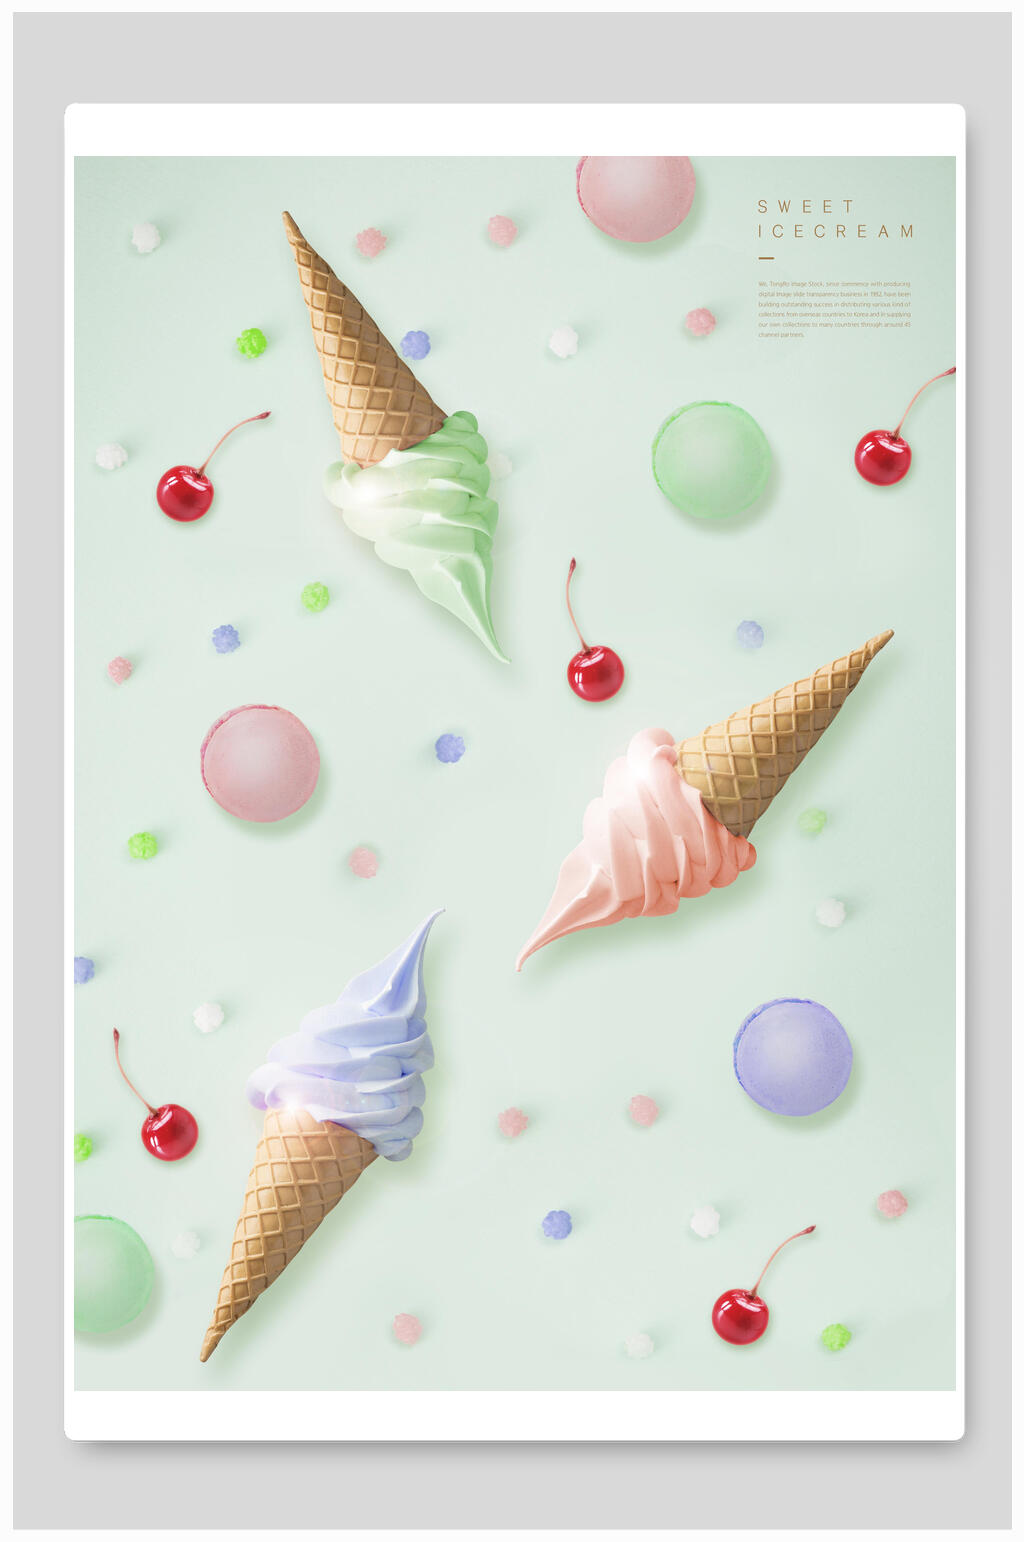 清新水果冰淇淋雪糕甜品美食海报背景素材